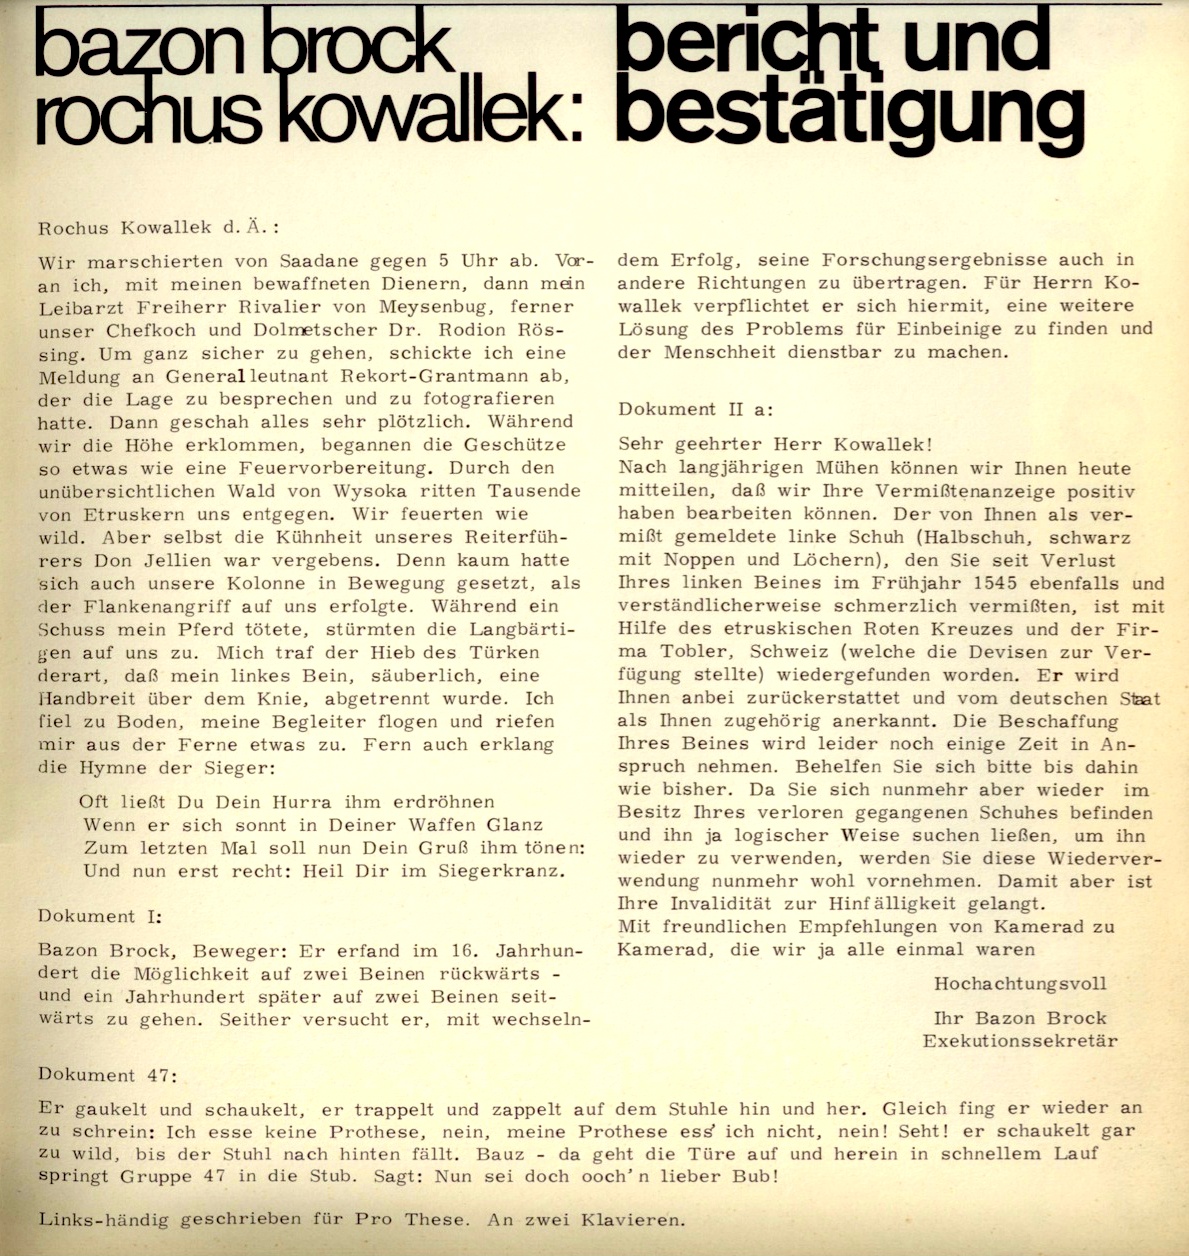 bazon brock/rochus kowallek: bericht und bestätigung, Bild: Pro These. Zeitschrift für Unvollkommene. Nr. 01. Berlin 1966..